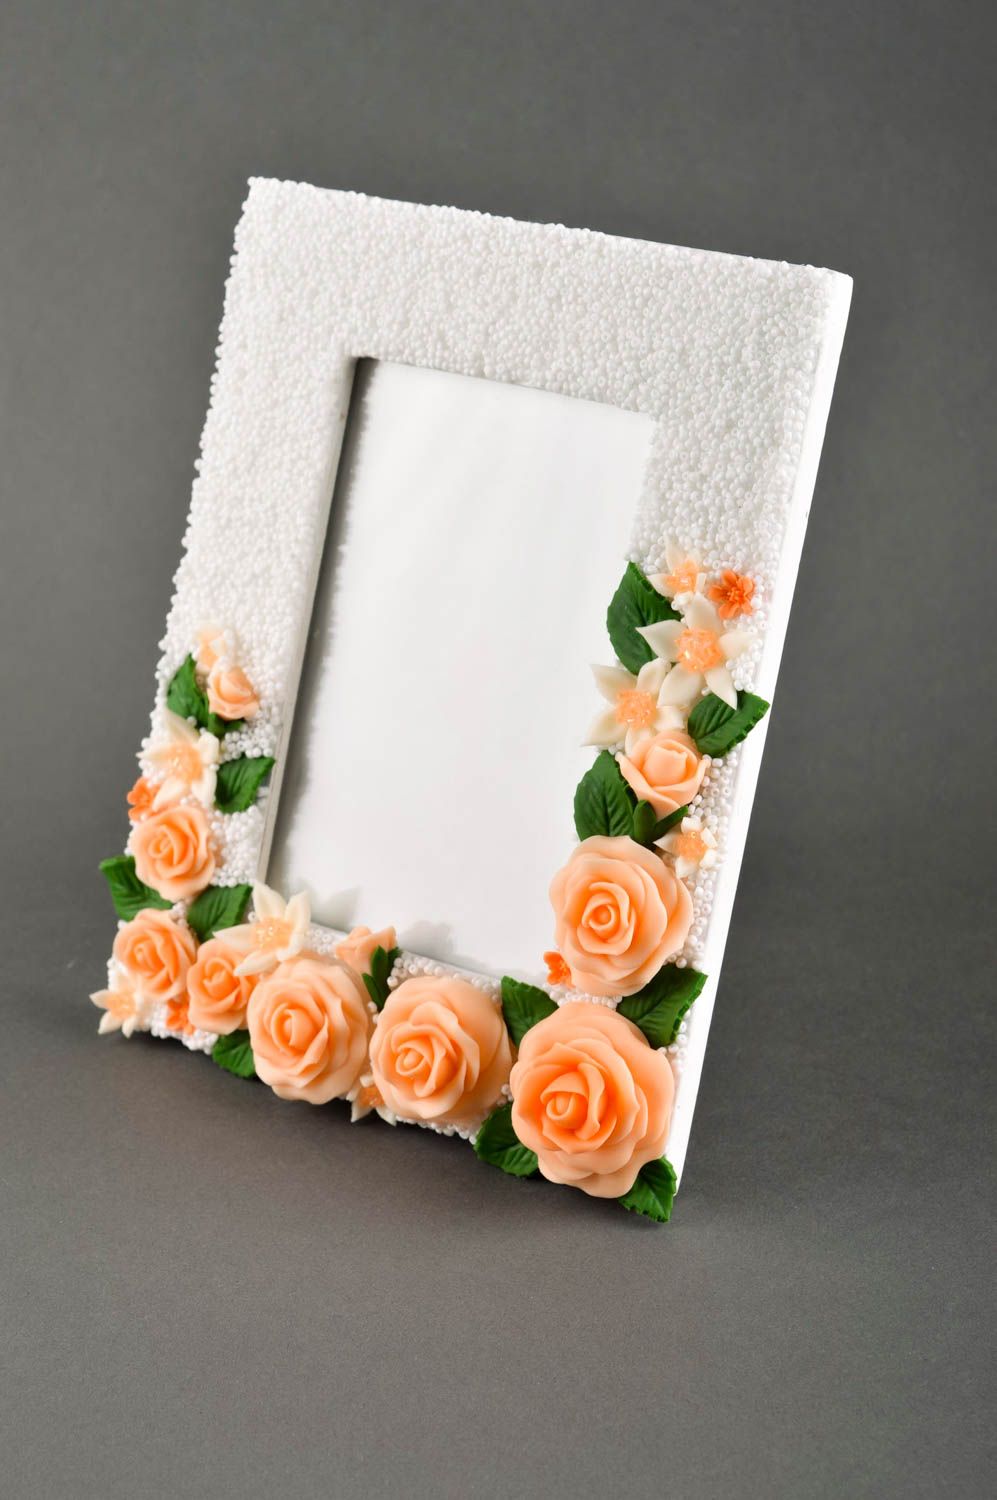 Фоторамка ручной работы рамка для фото белая деревянная фоторамка с розами фото 1